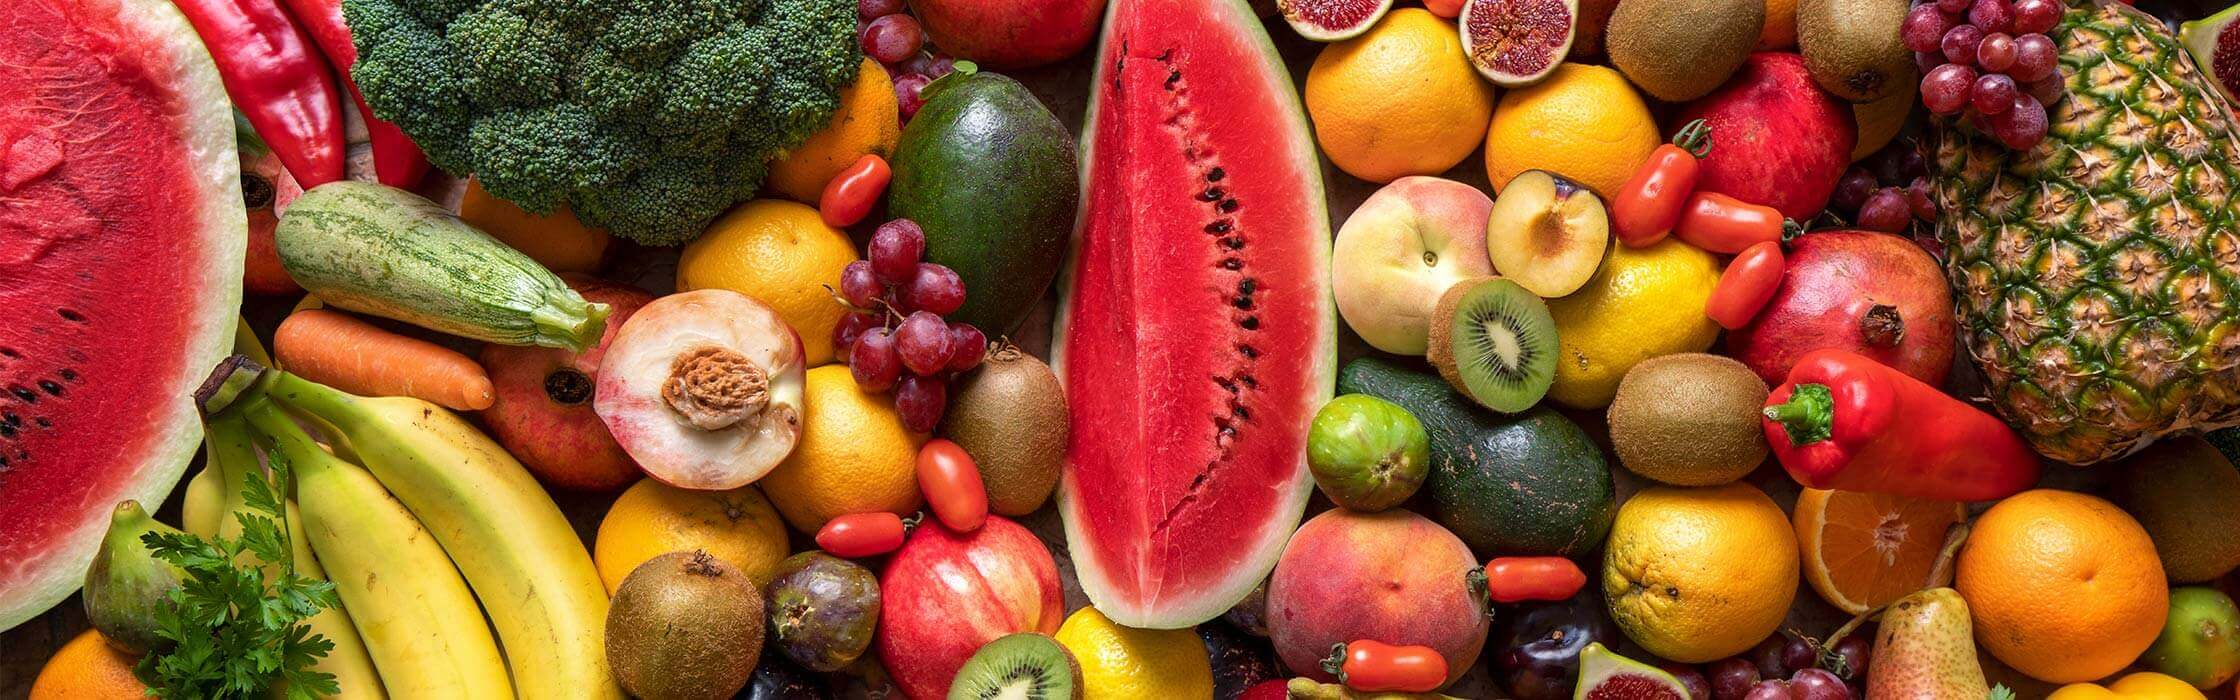 Selezione di frutta e verdura